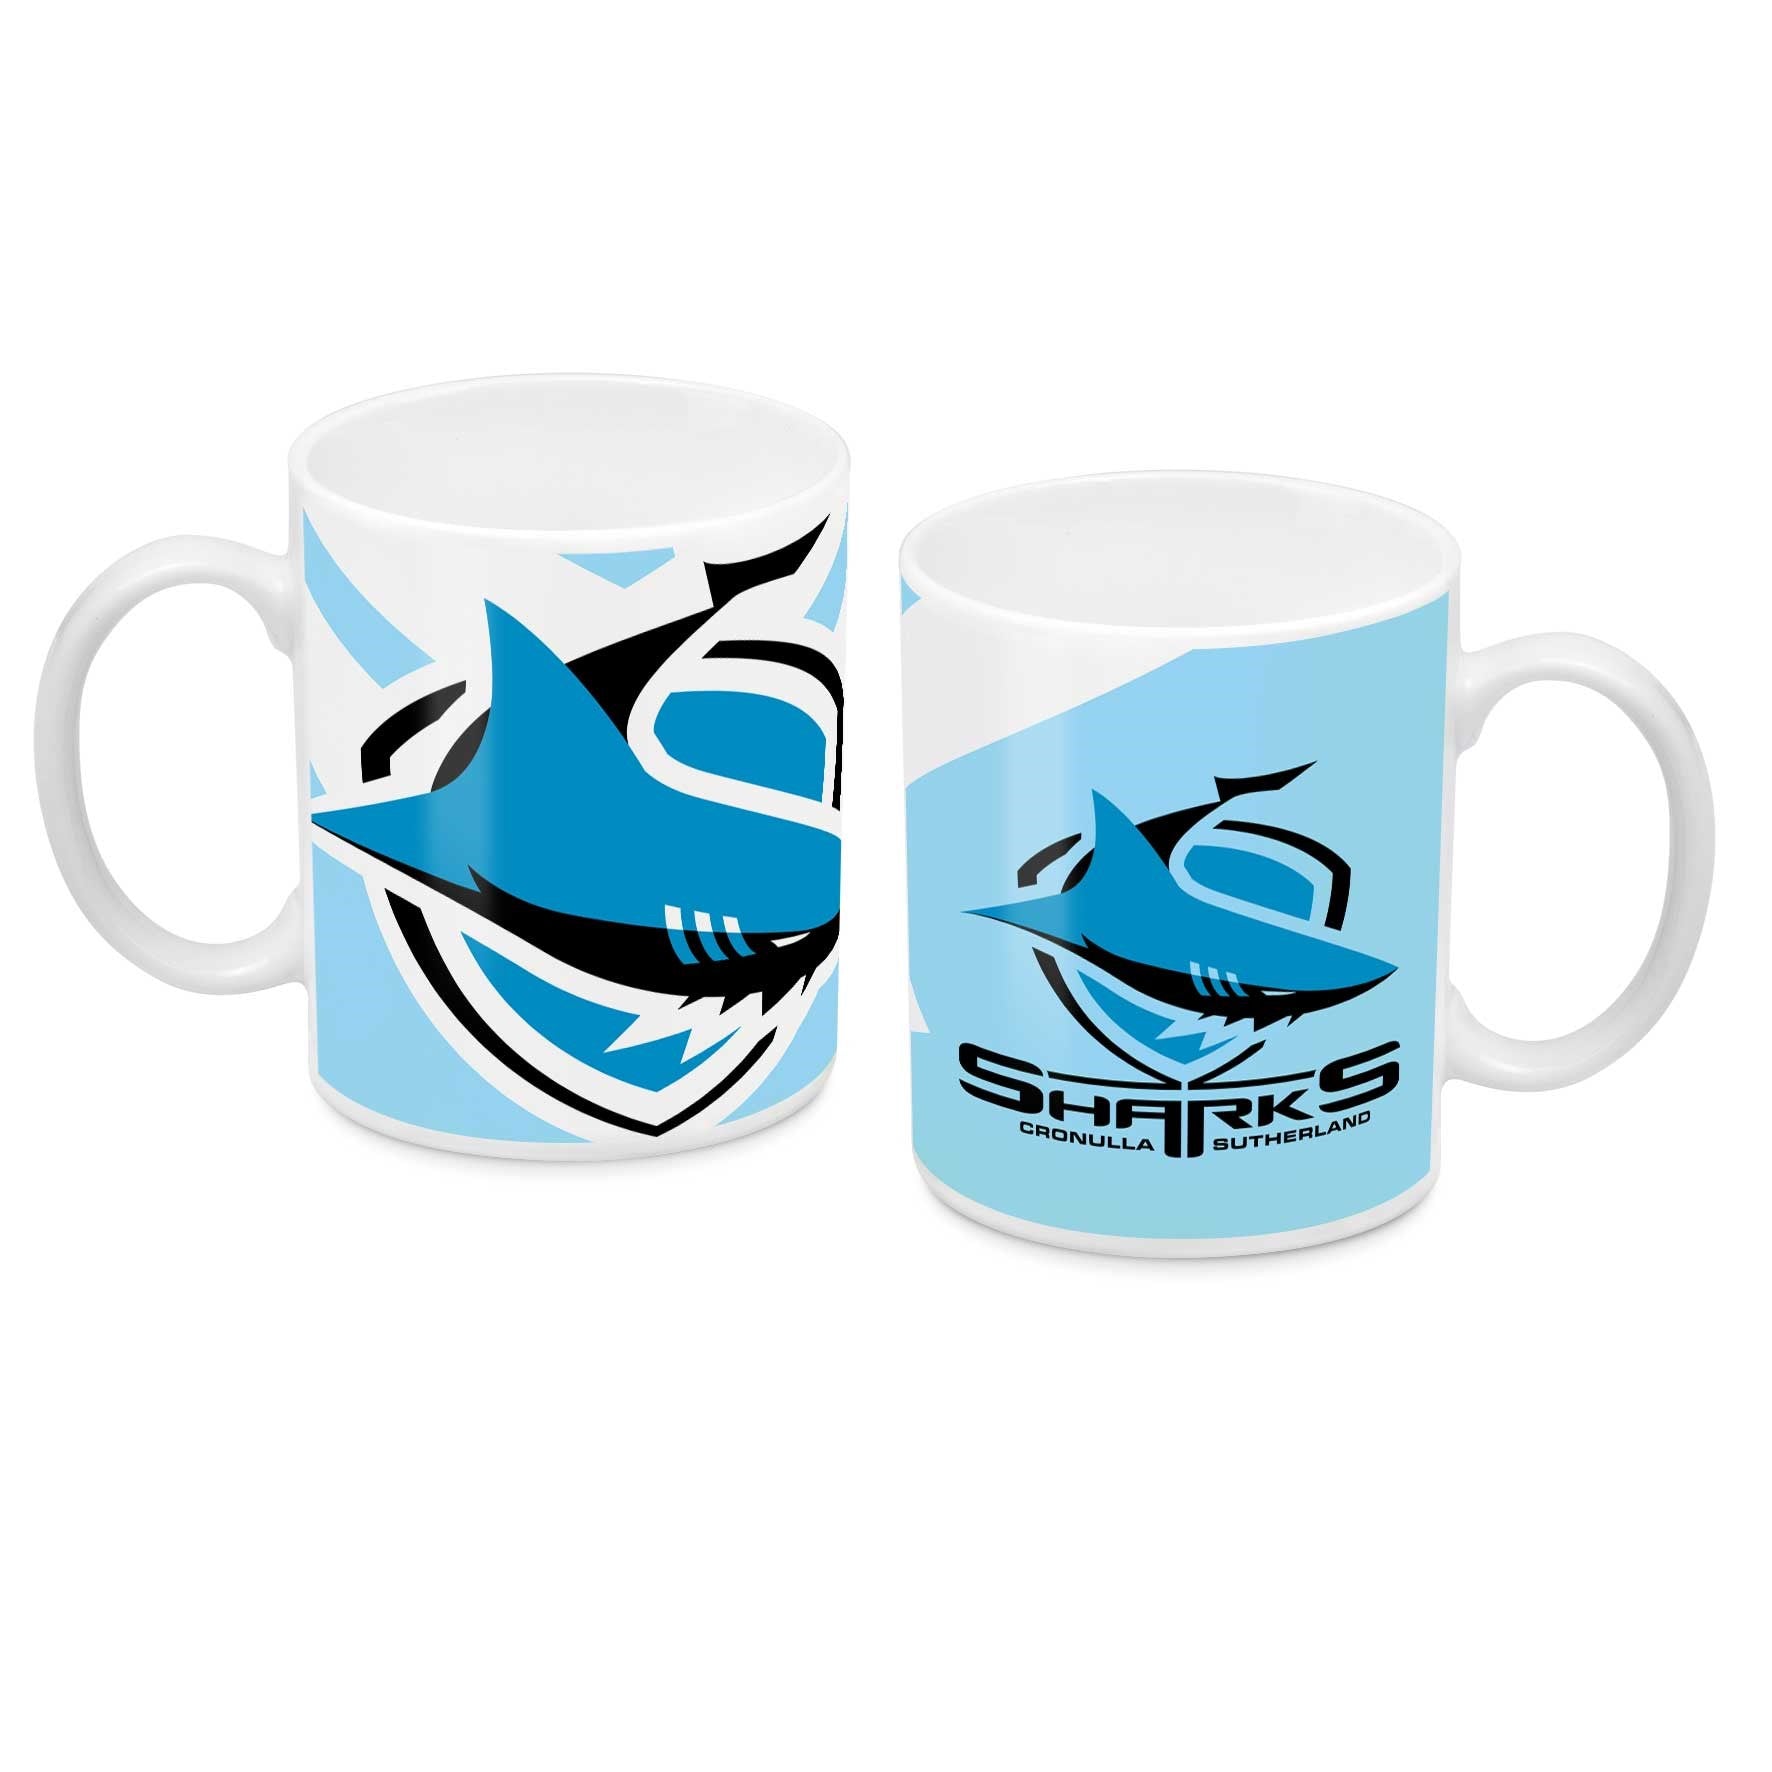 Cronulla Sharks Ceramic Mug